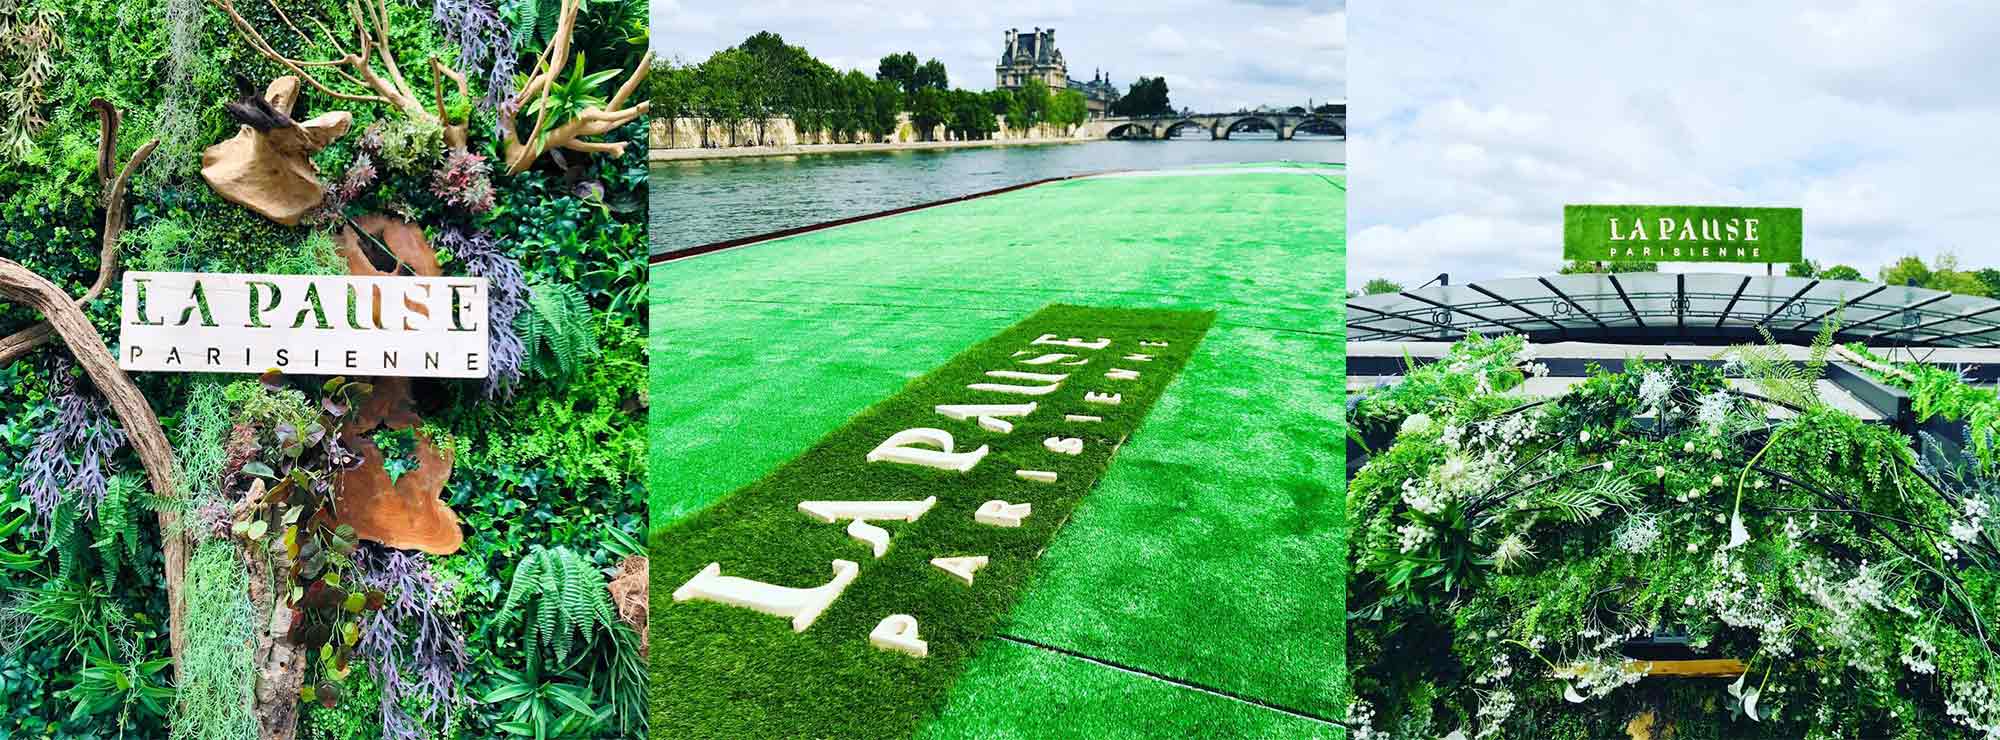 La pause parisienne - un logo et un site très nature